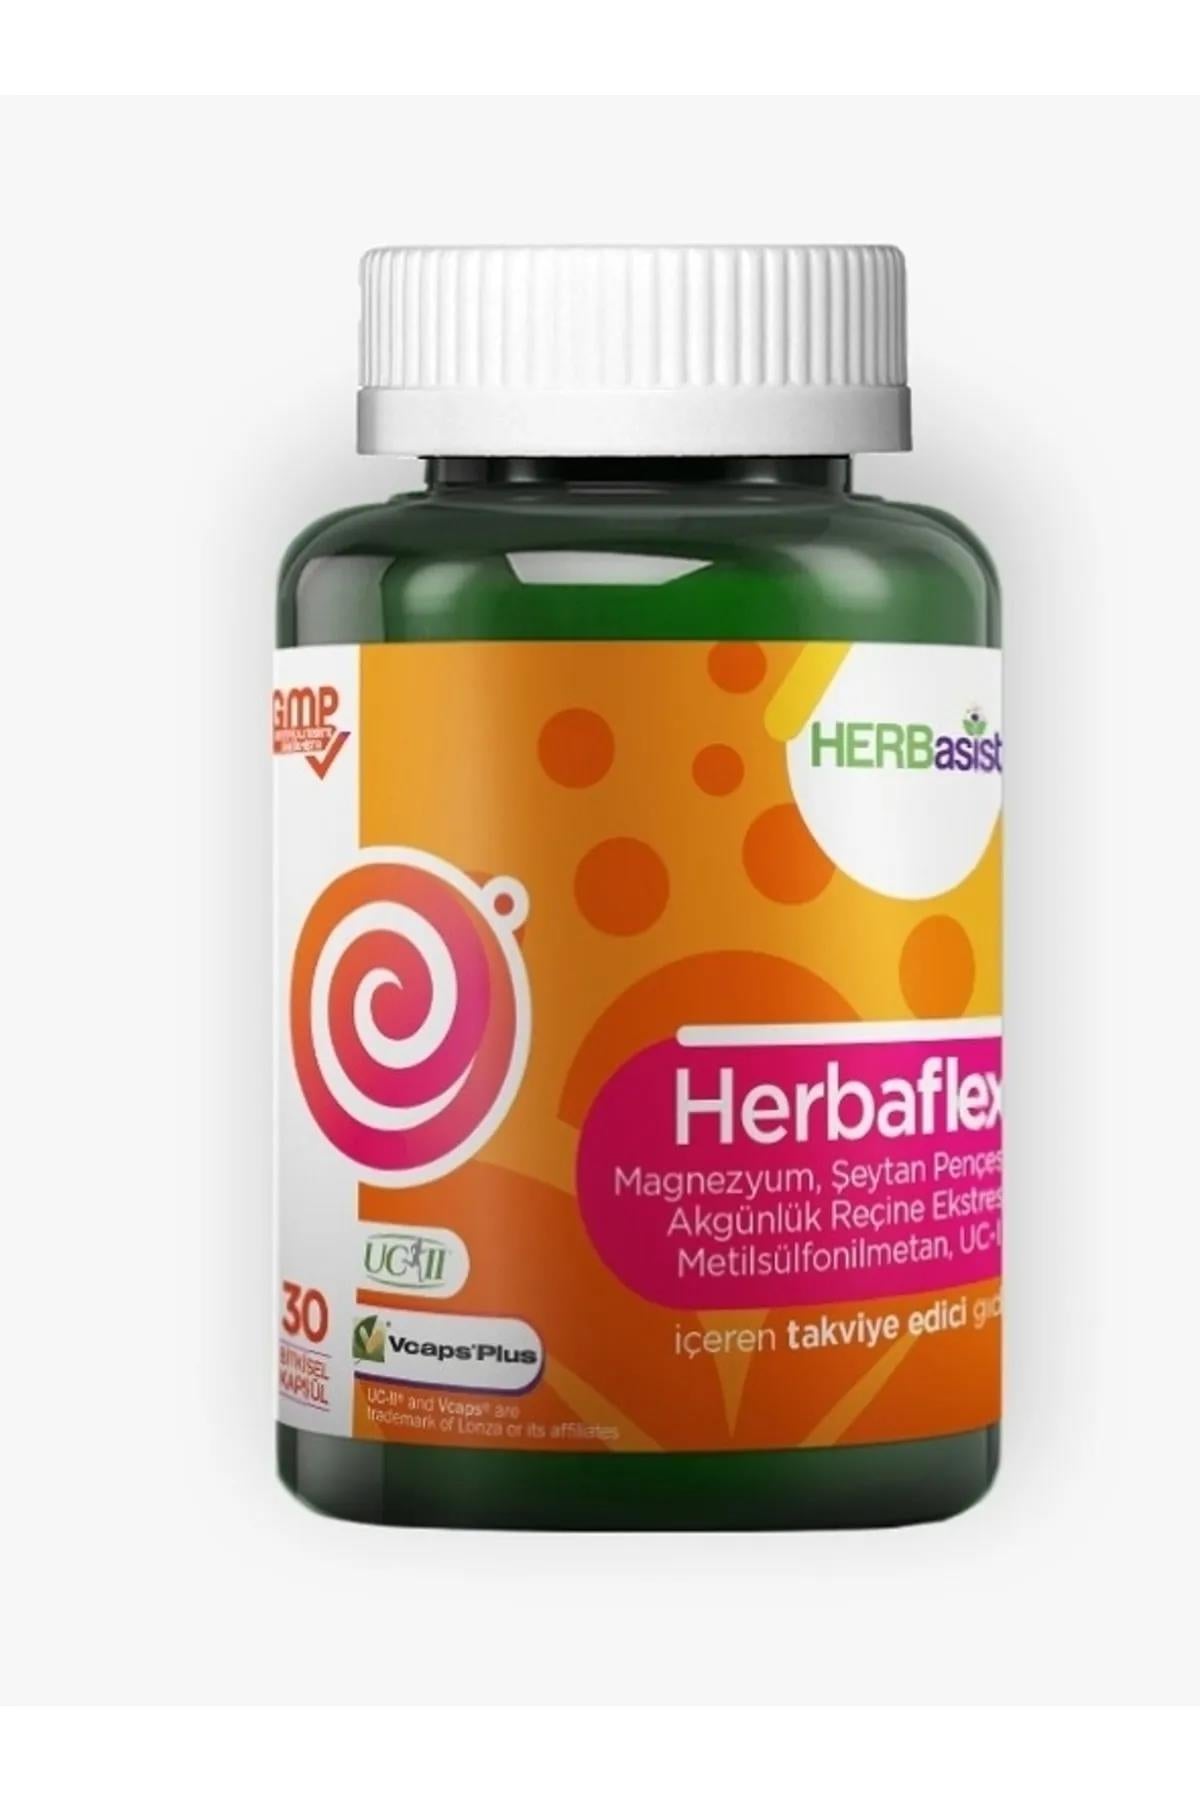 HERBasist Herbaflex 30 Kapsül